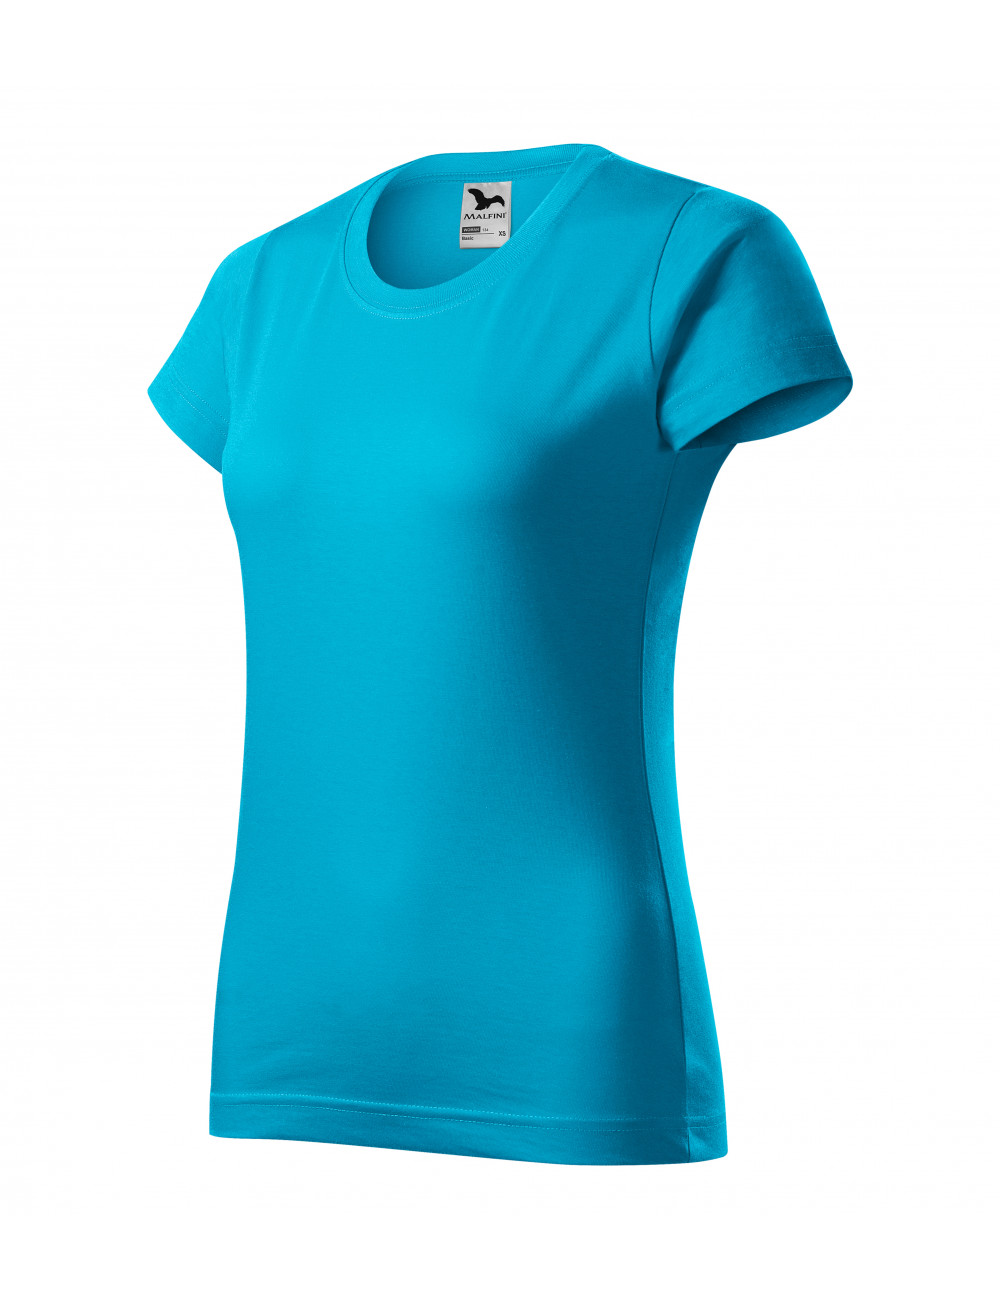 Women`s t-shirt basic 134 turquoise Adler Malfini